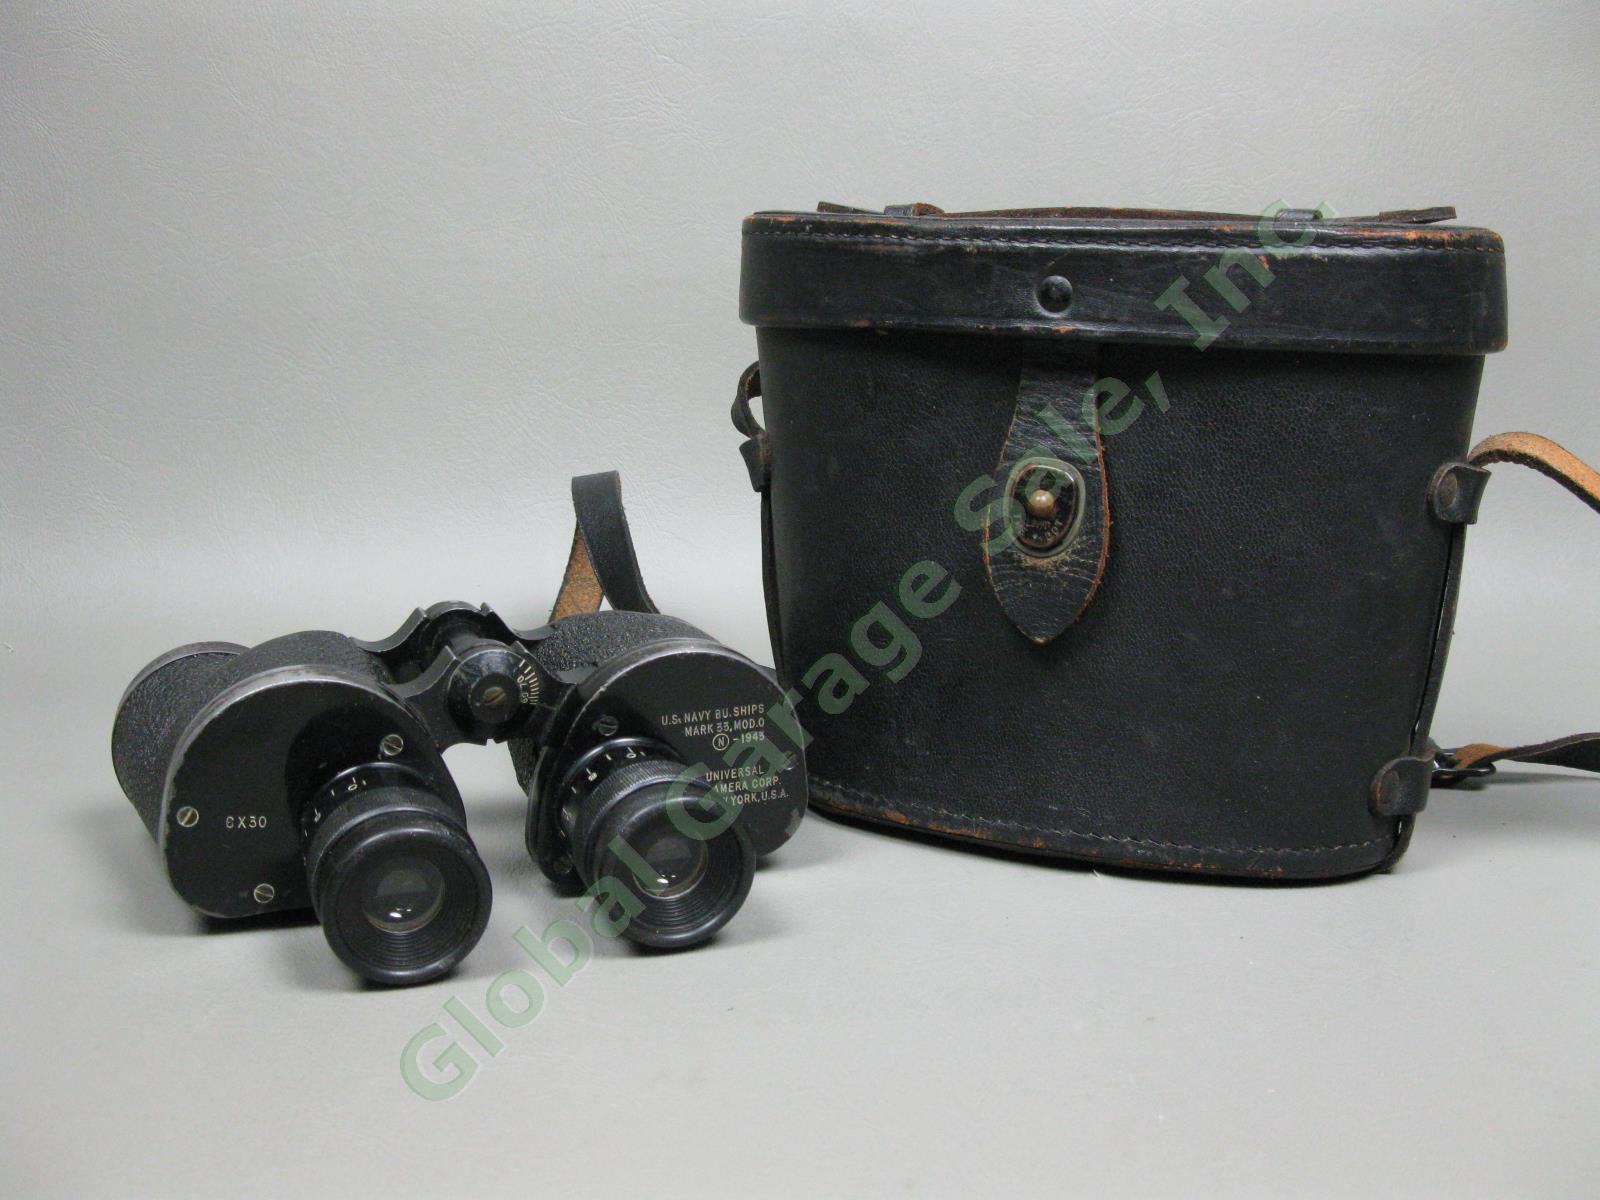 1943 WWII US Navy Buships Binoculars Mark-33 XXXIII 6x30 Mod-0 Original Case USA